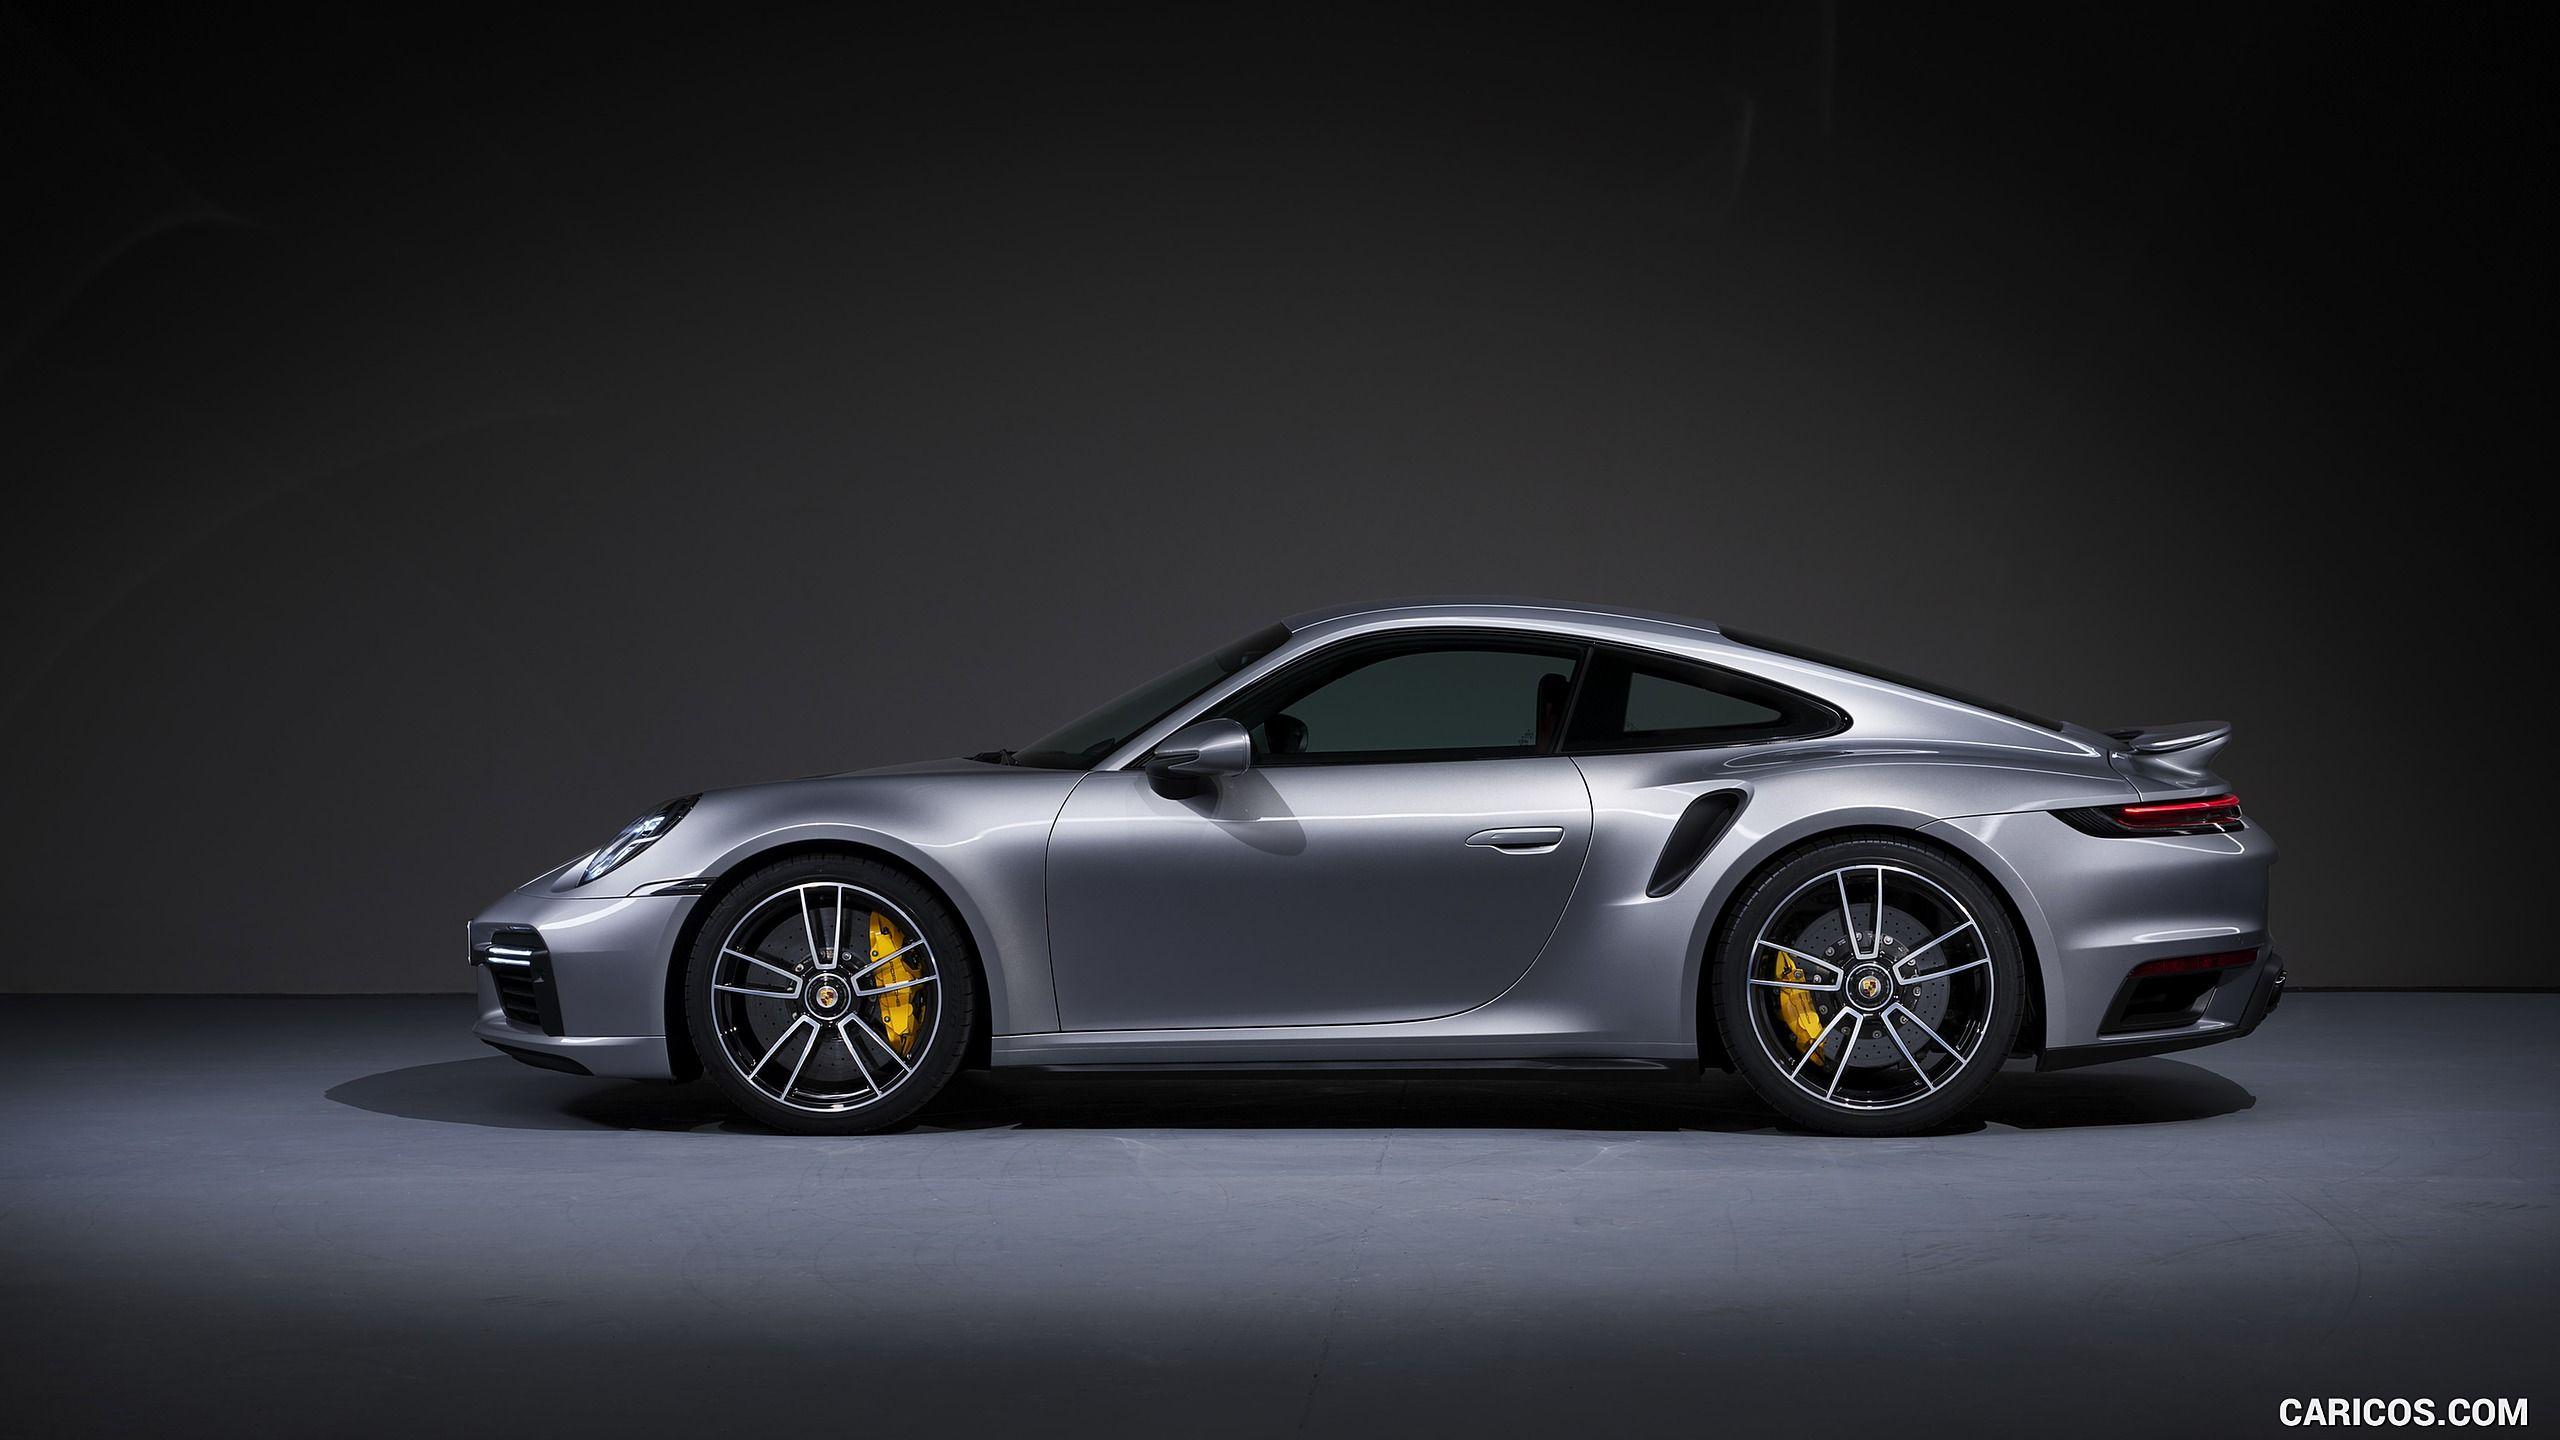 Porsche Carrera Wallpapers Top Free Porsche Carrera Backgrounds Wallpaperaccess